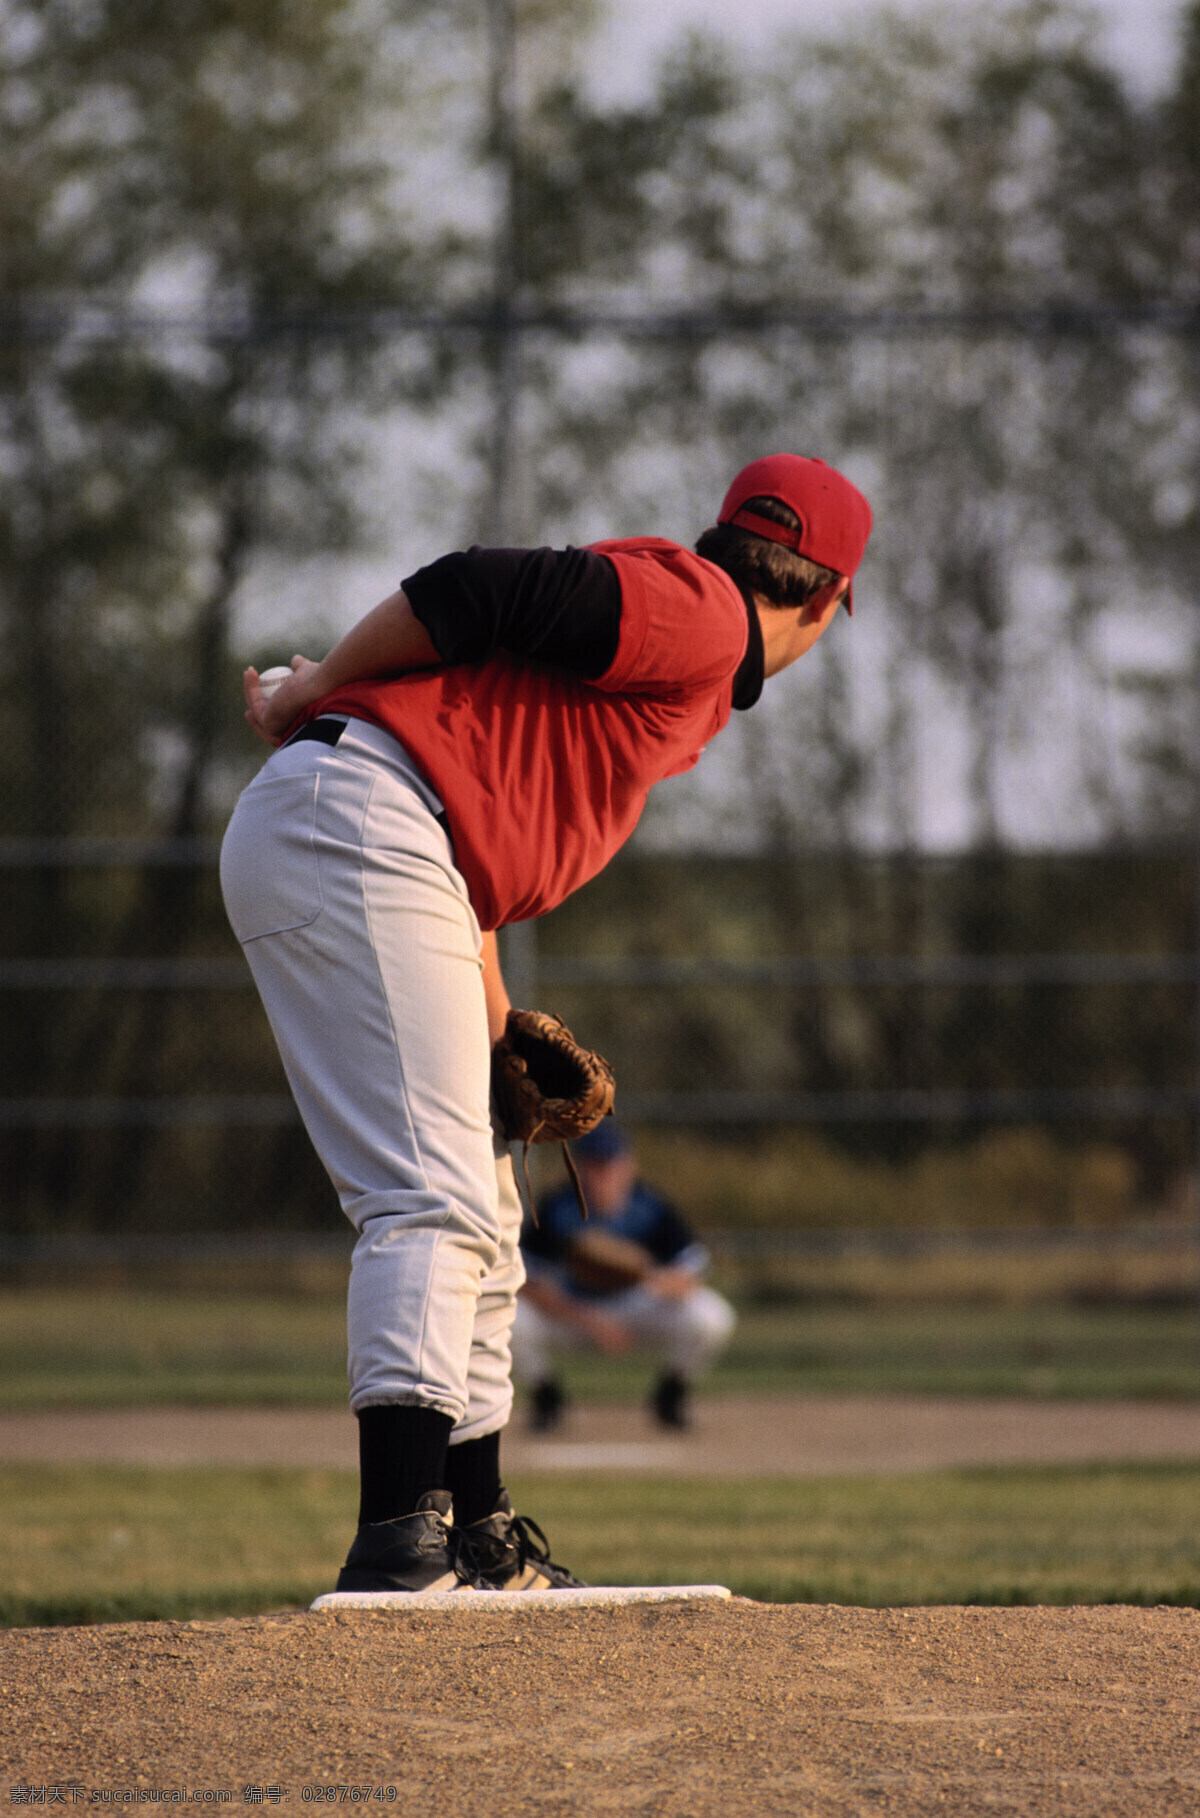 体育素材 棒球 草坪 垒球 投手 弯腰 准备 文化艺术 体育运动 摄影图库